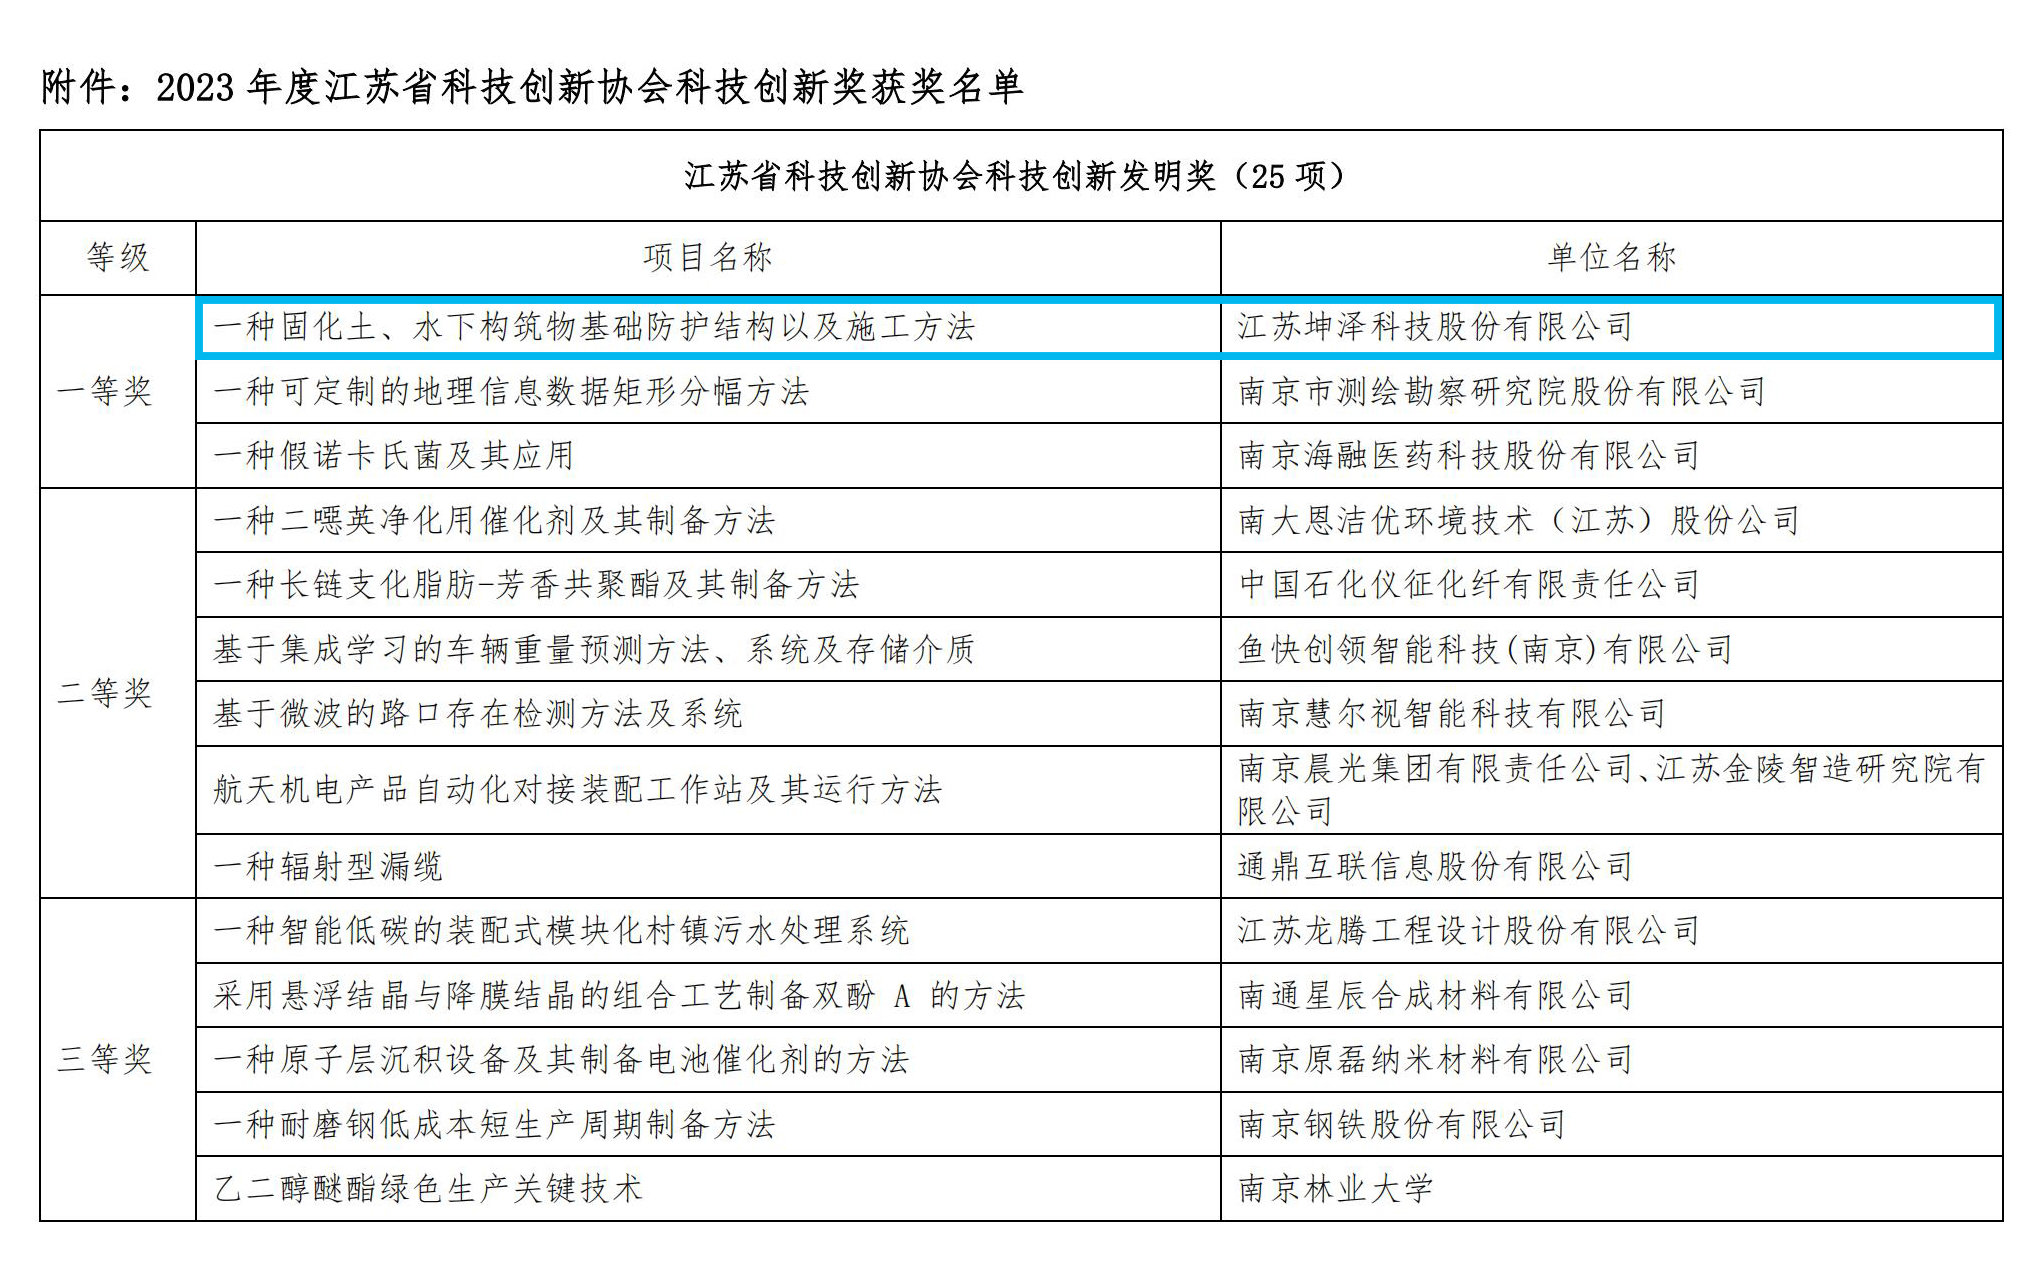 2023年江苏省科技创新协会科技创新奖评奖结果_06